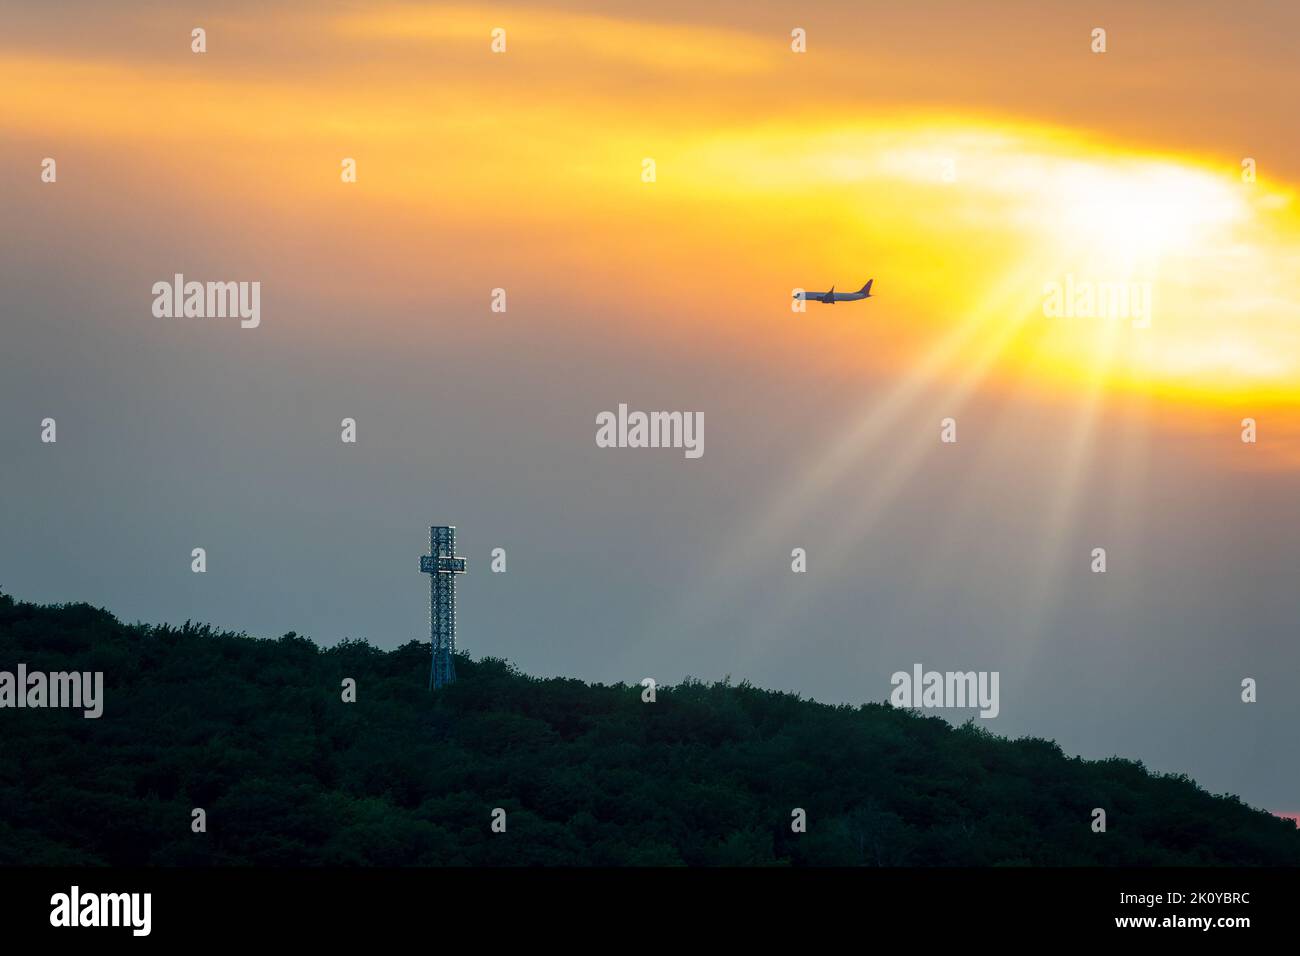 Himmlisches Licht bei Sonnenuntergang auf einem Flugzeug über dem Kreuz des Mont Royal, Montreal, Kanada Stockfoto